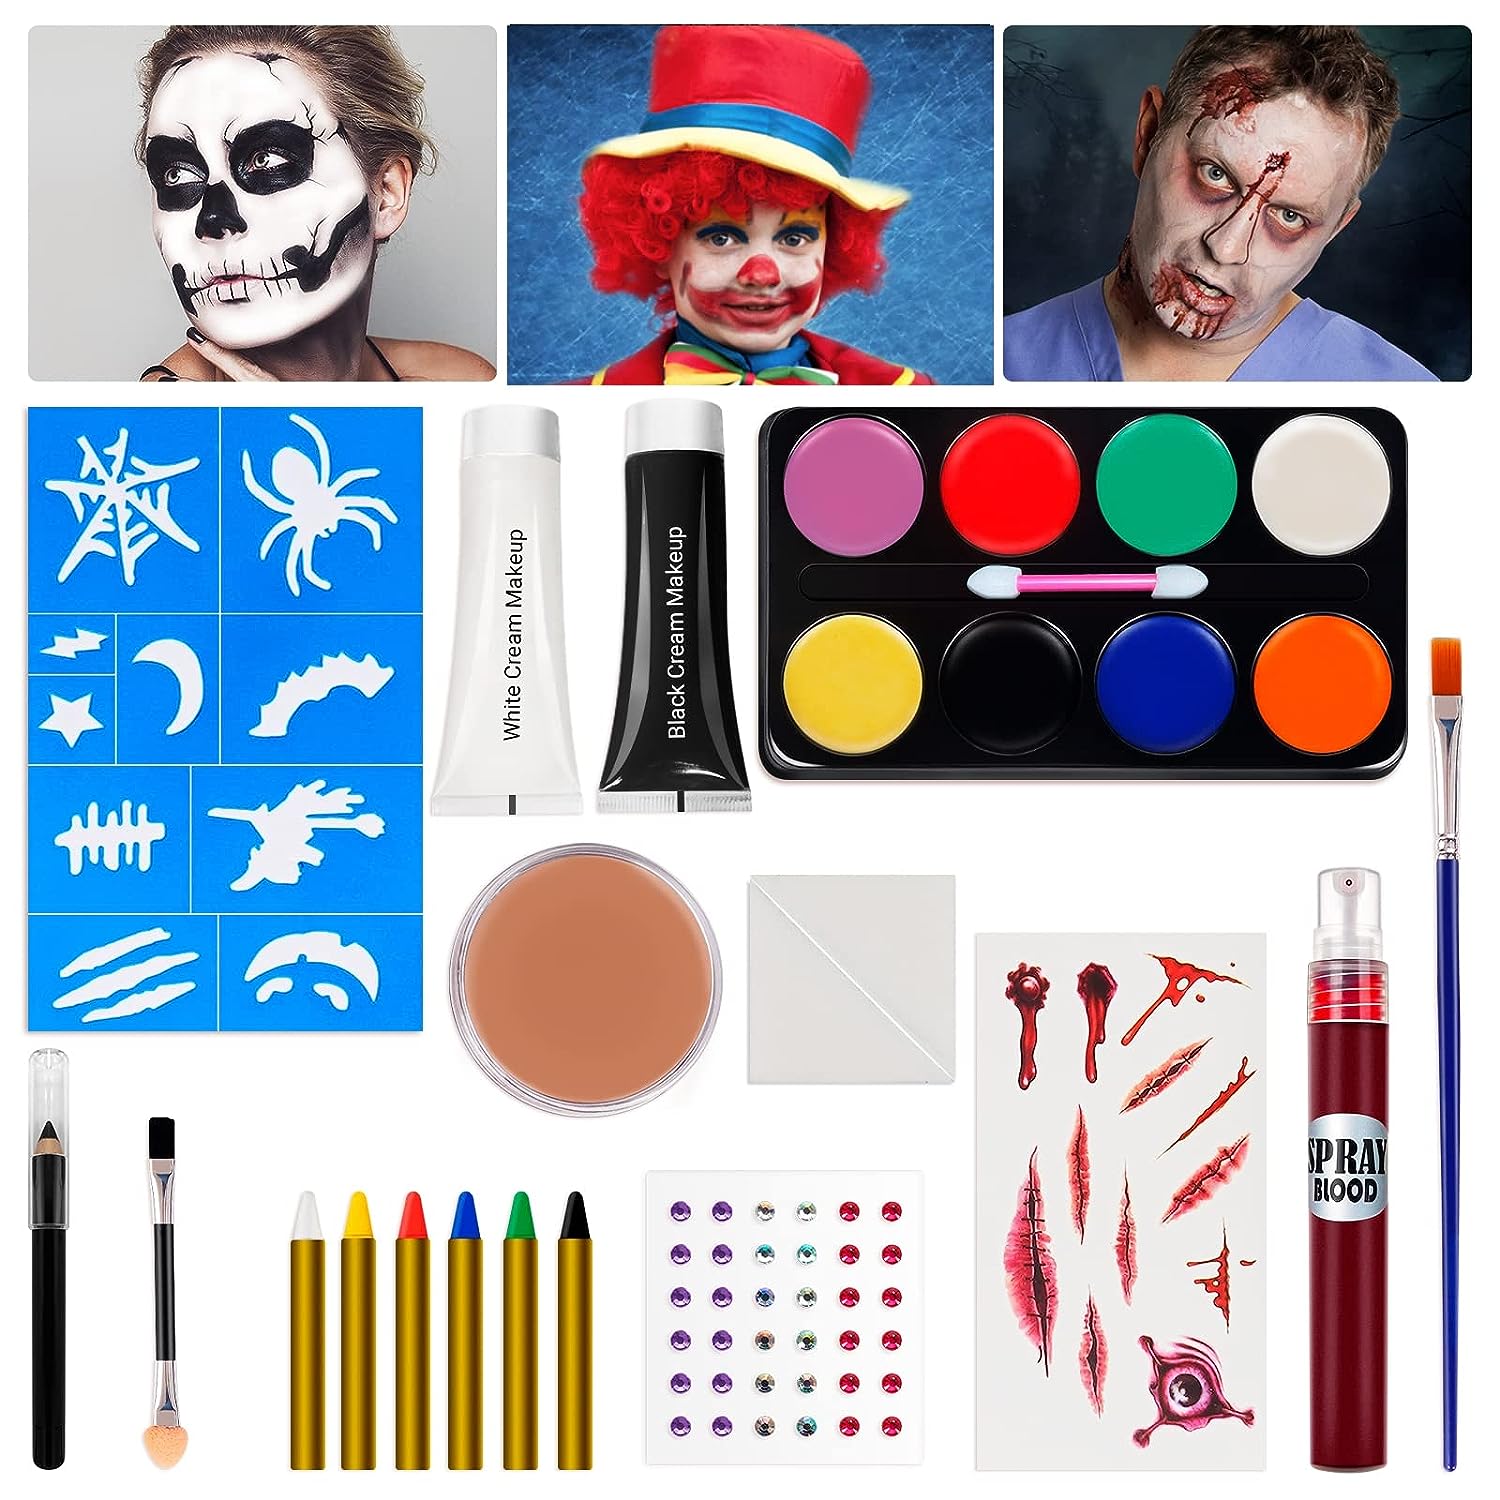 SOOFUN Halloween Makeup Kit for Adults and Kids